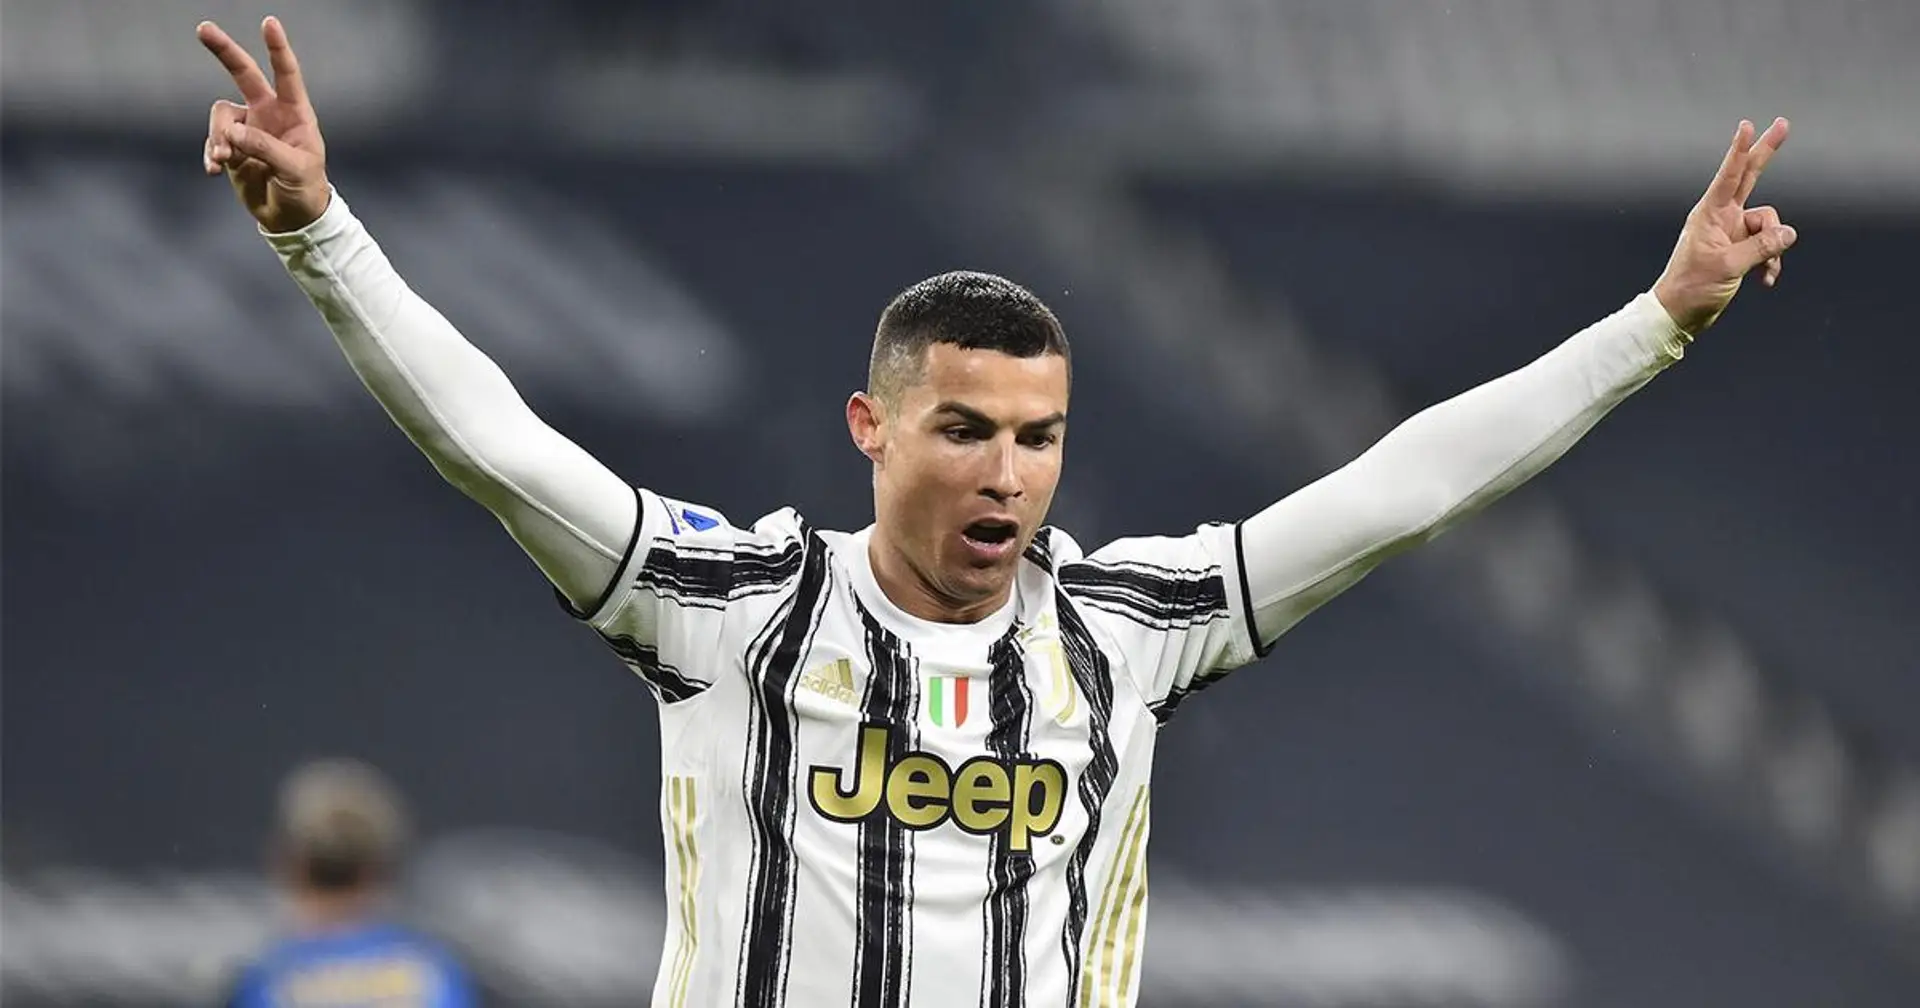 Légende: Cristiano Ronaldo devient le meilleur buteur de l'histoire du football